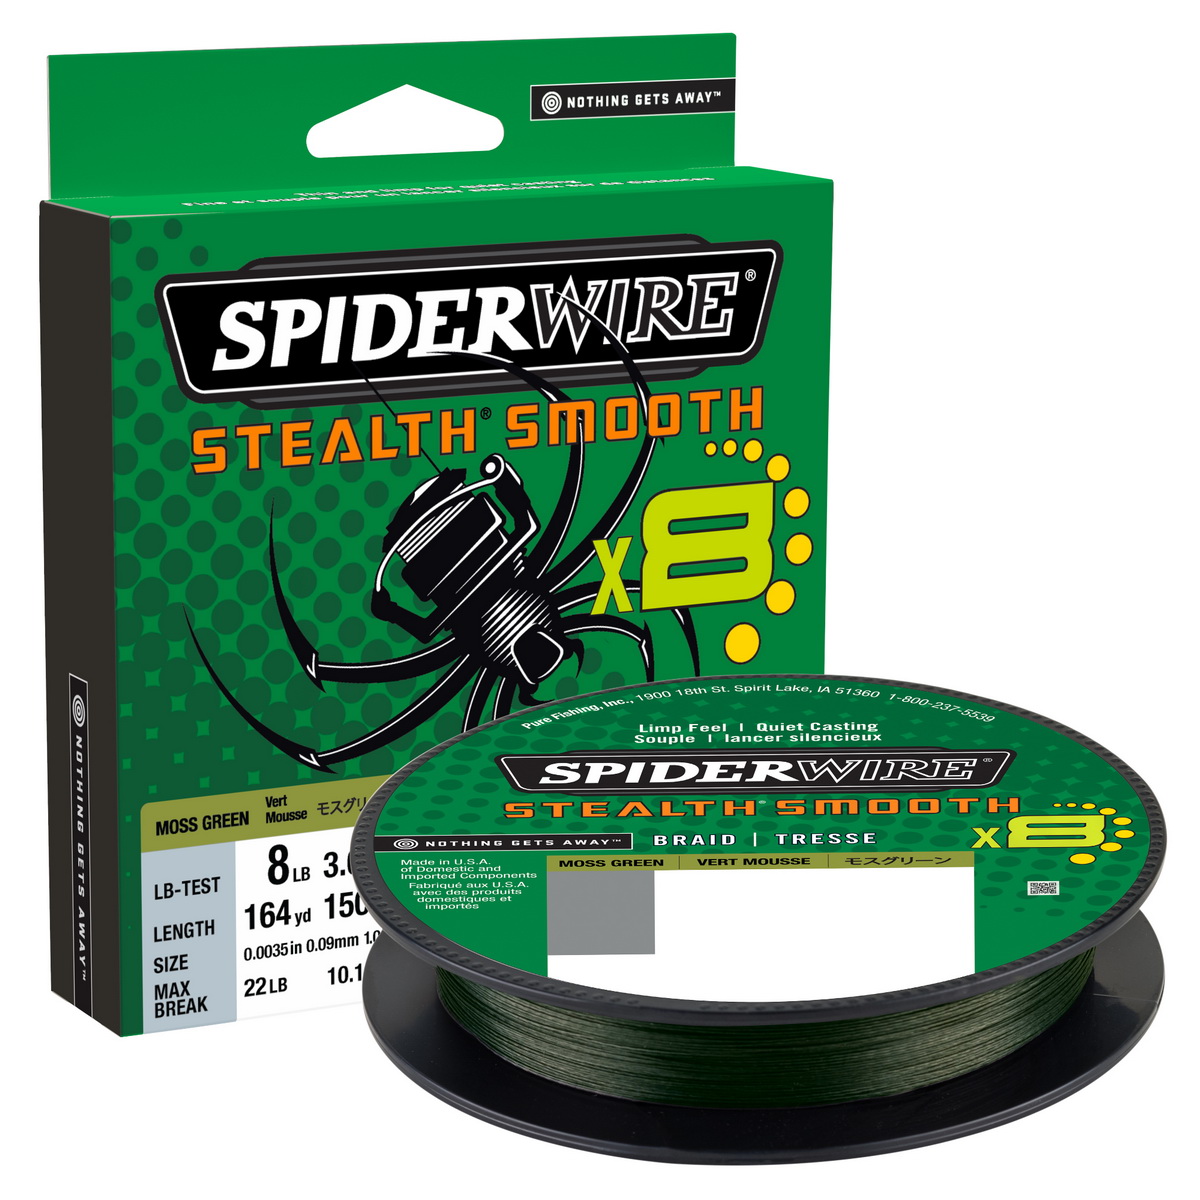 SPIDERWIRE Stealth Smooth 8 Braid 0,09mm 150m Moss Green 7,5kg geflochten